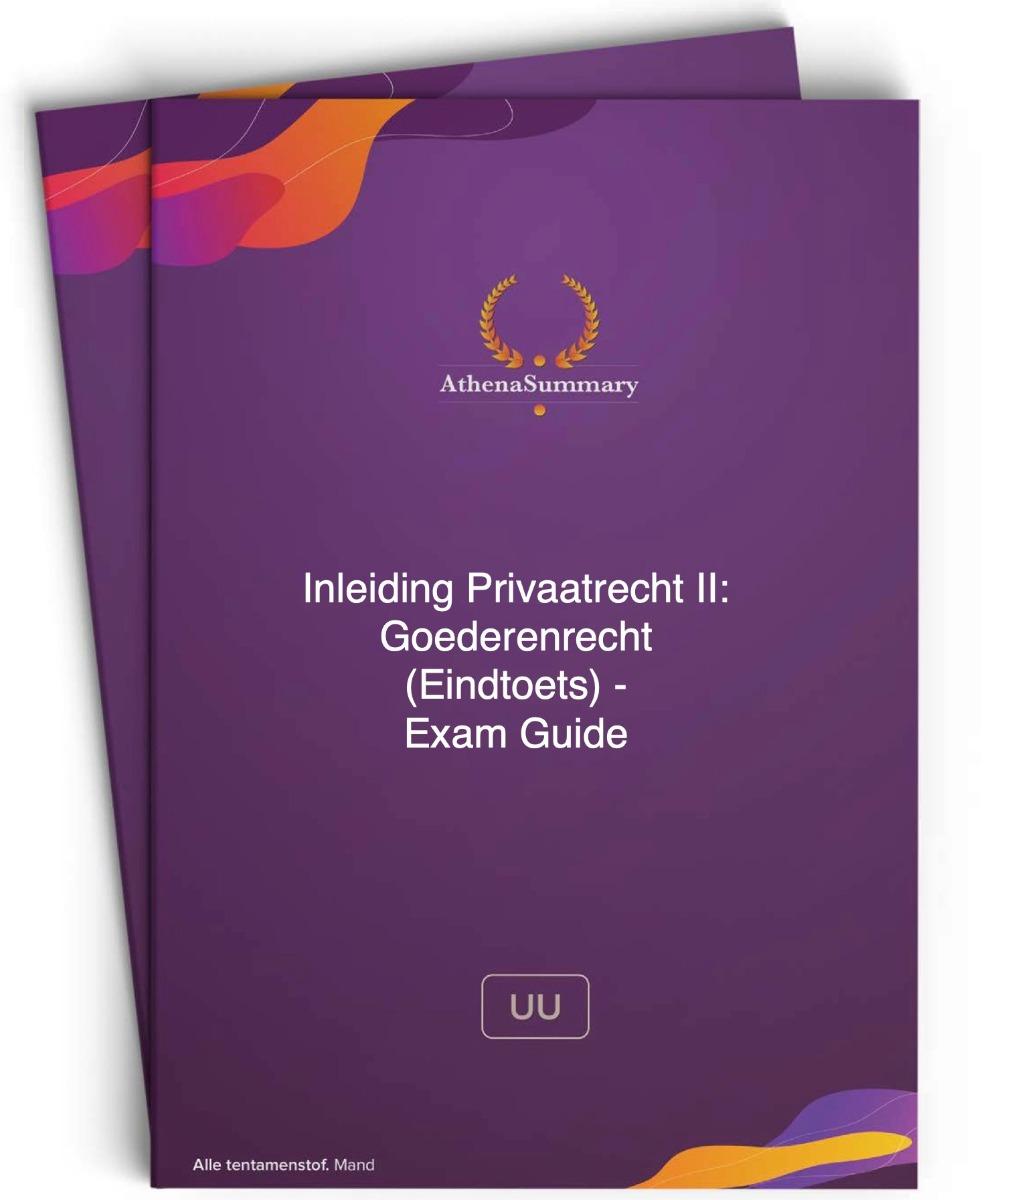 Exam Guide - Inleiding Privaatrecht II: Goederenrecht (Eindtoets)